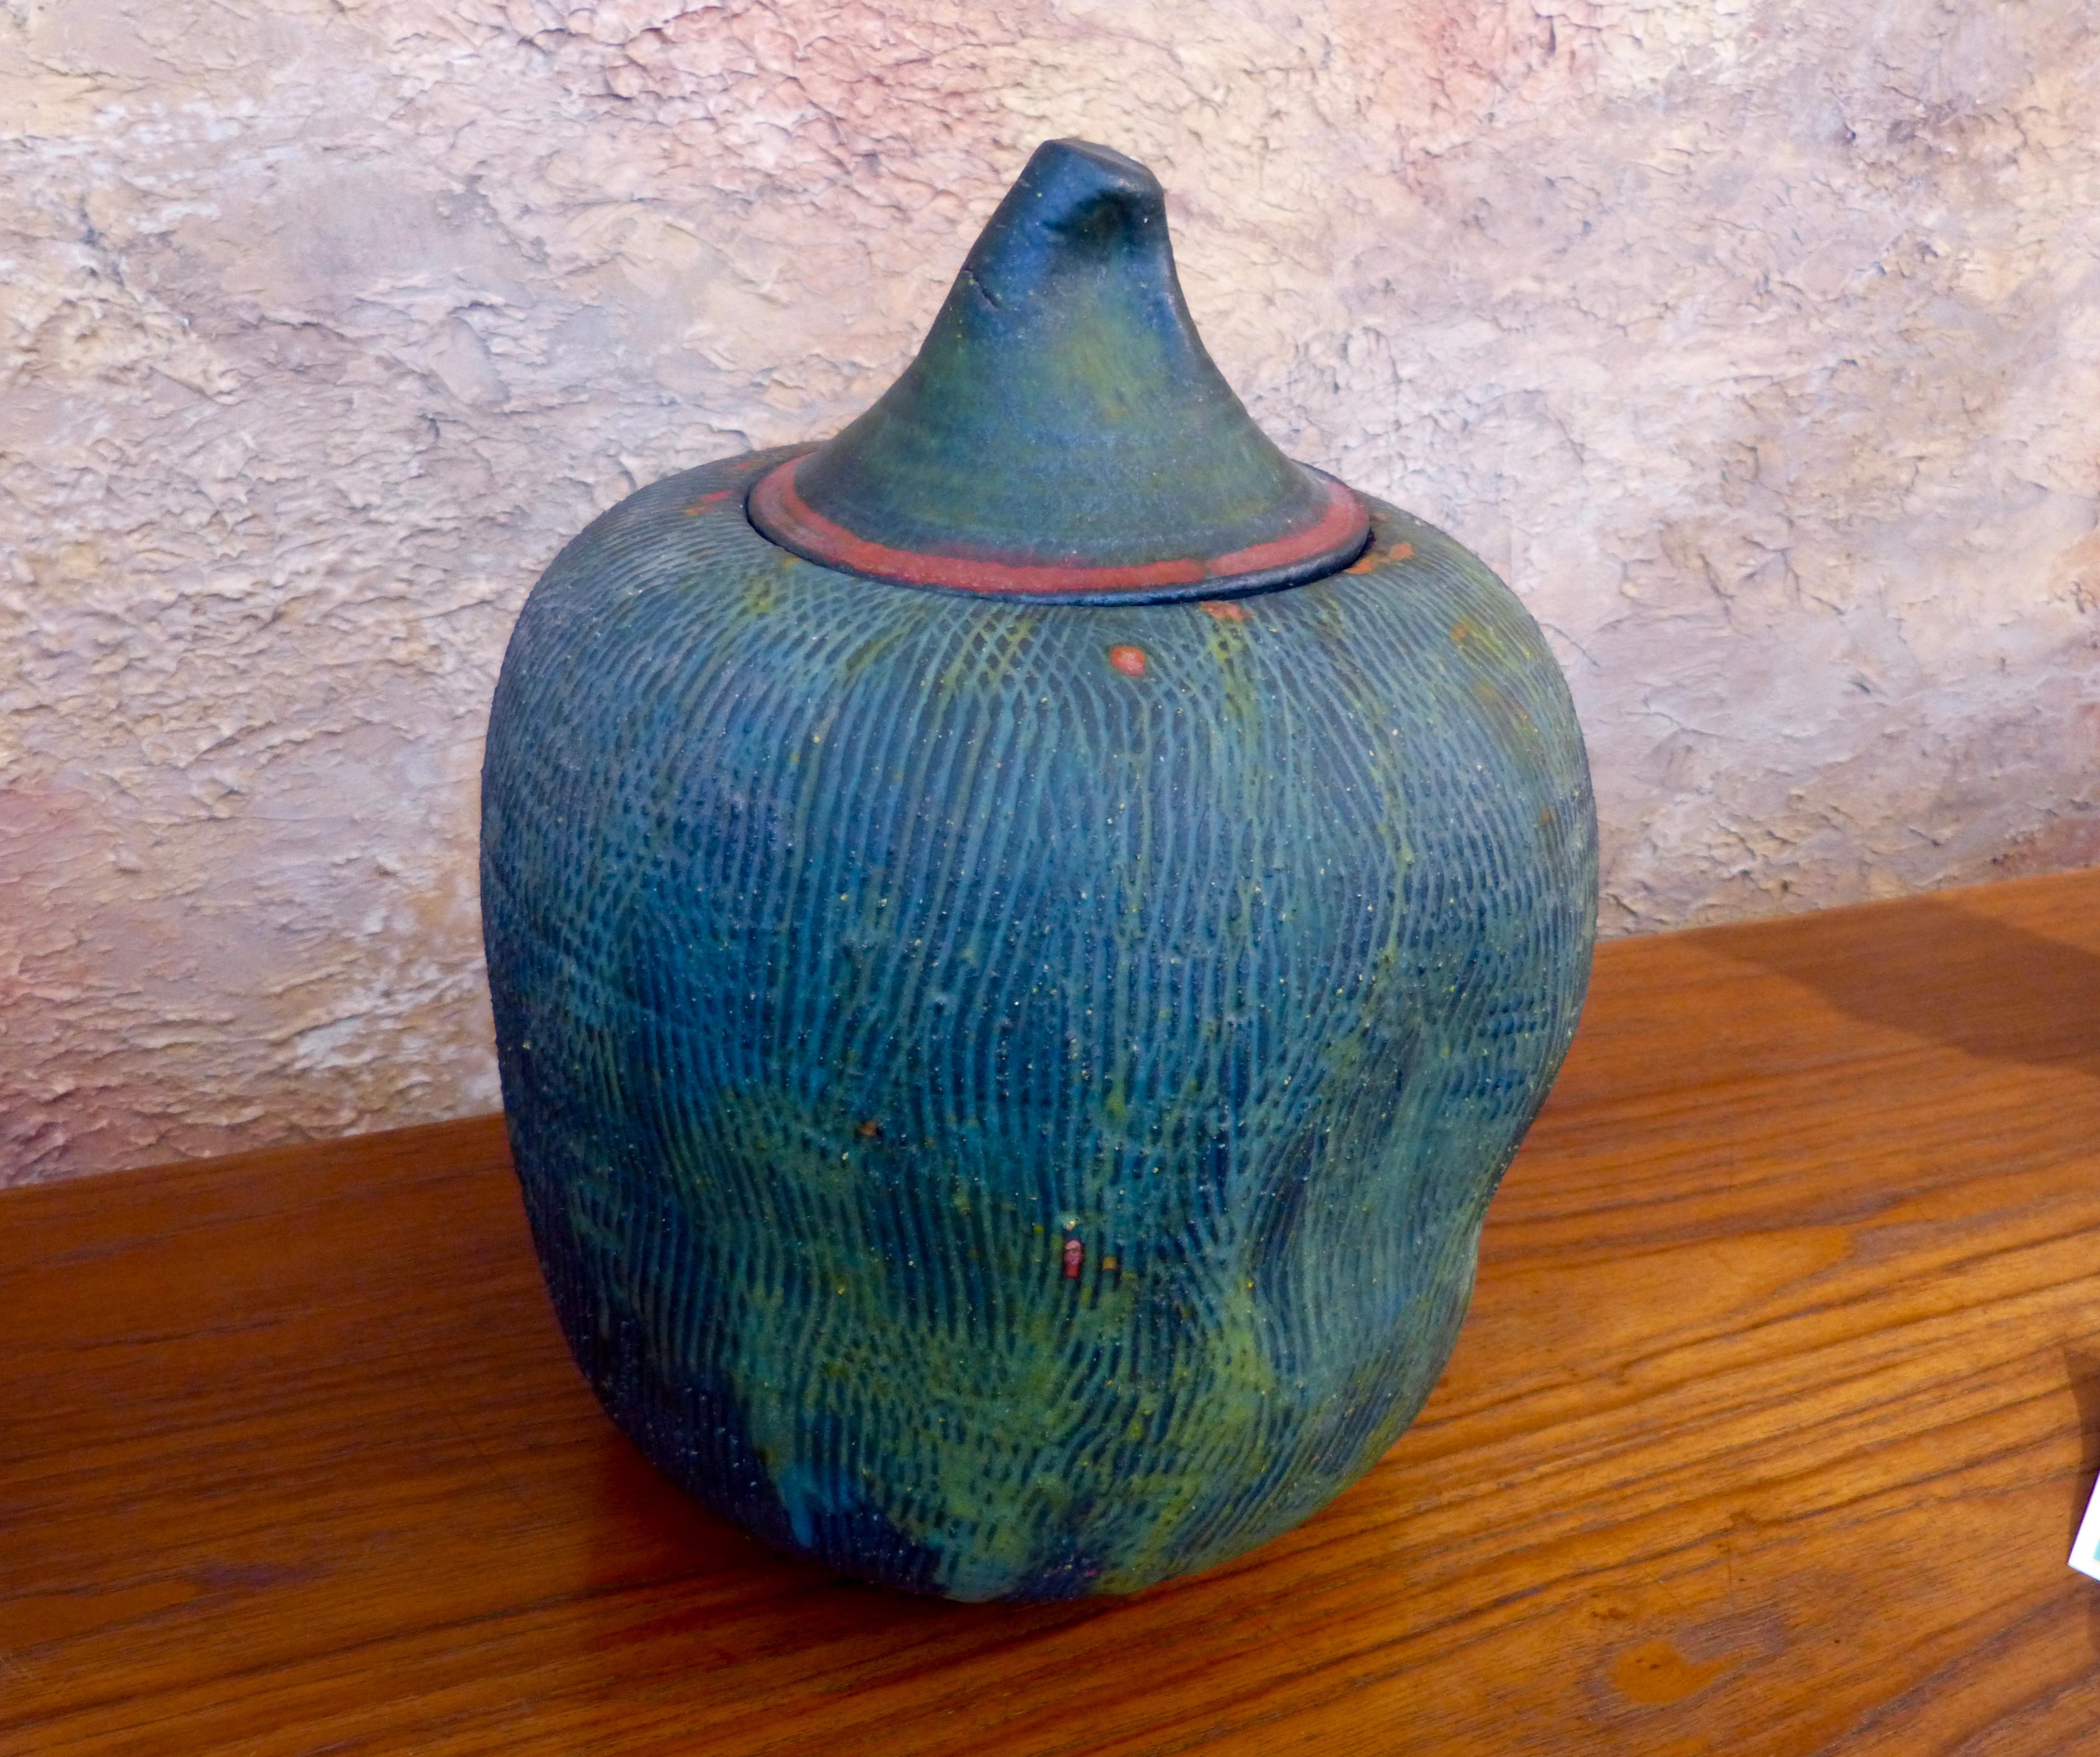 Terracotta John Tuska Lidded Stoneware Vessel For Sale